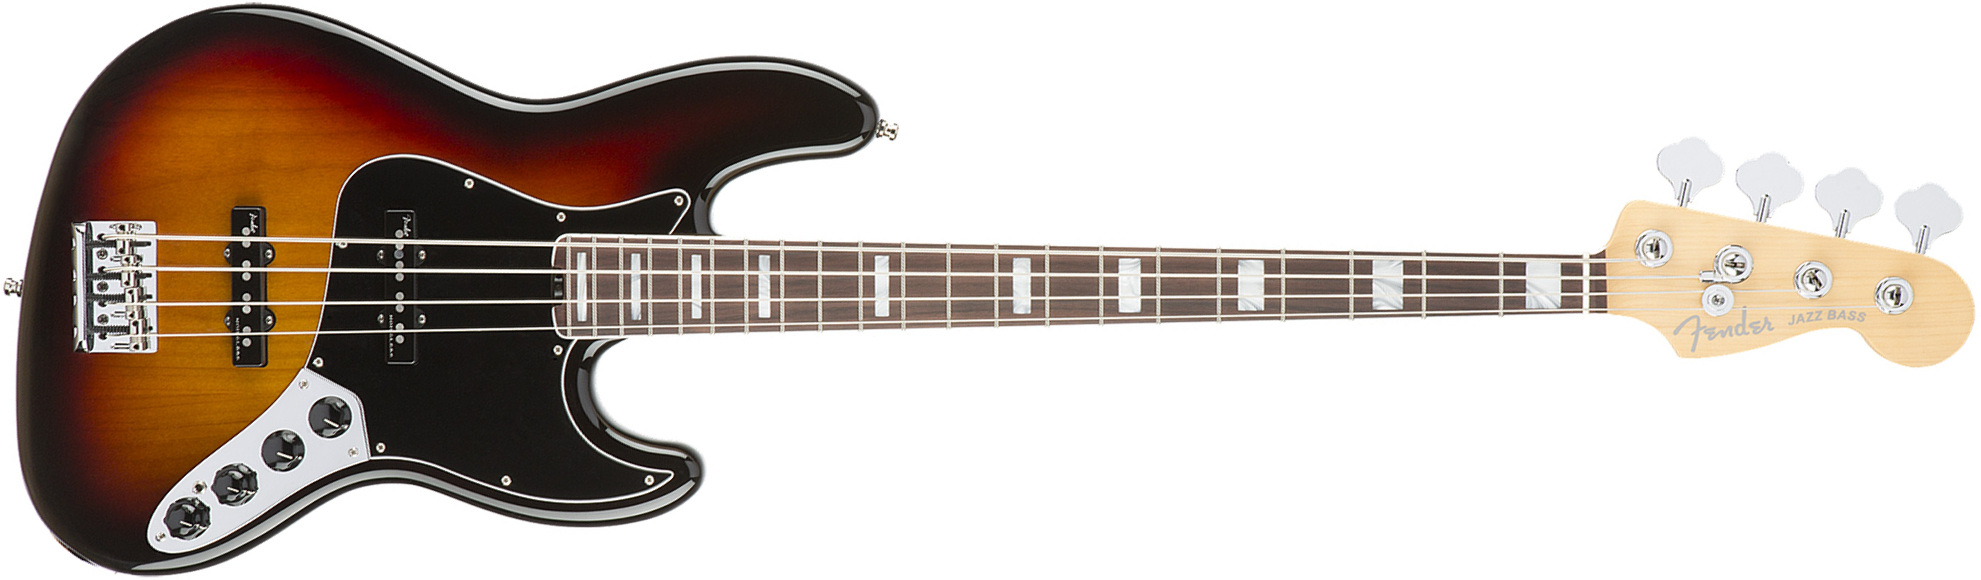 Fender Jazz Bass American Elite 2016 (usa, Rw) - 3-color Sunburst - Bajo eléctrico de cuerpo sólido - Main picture